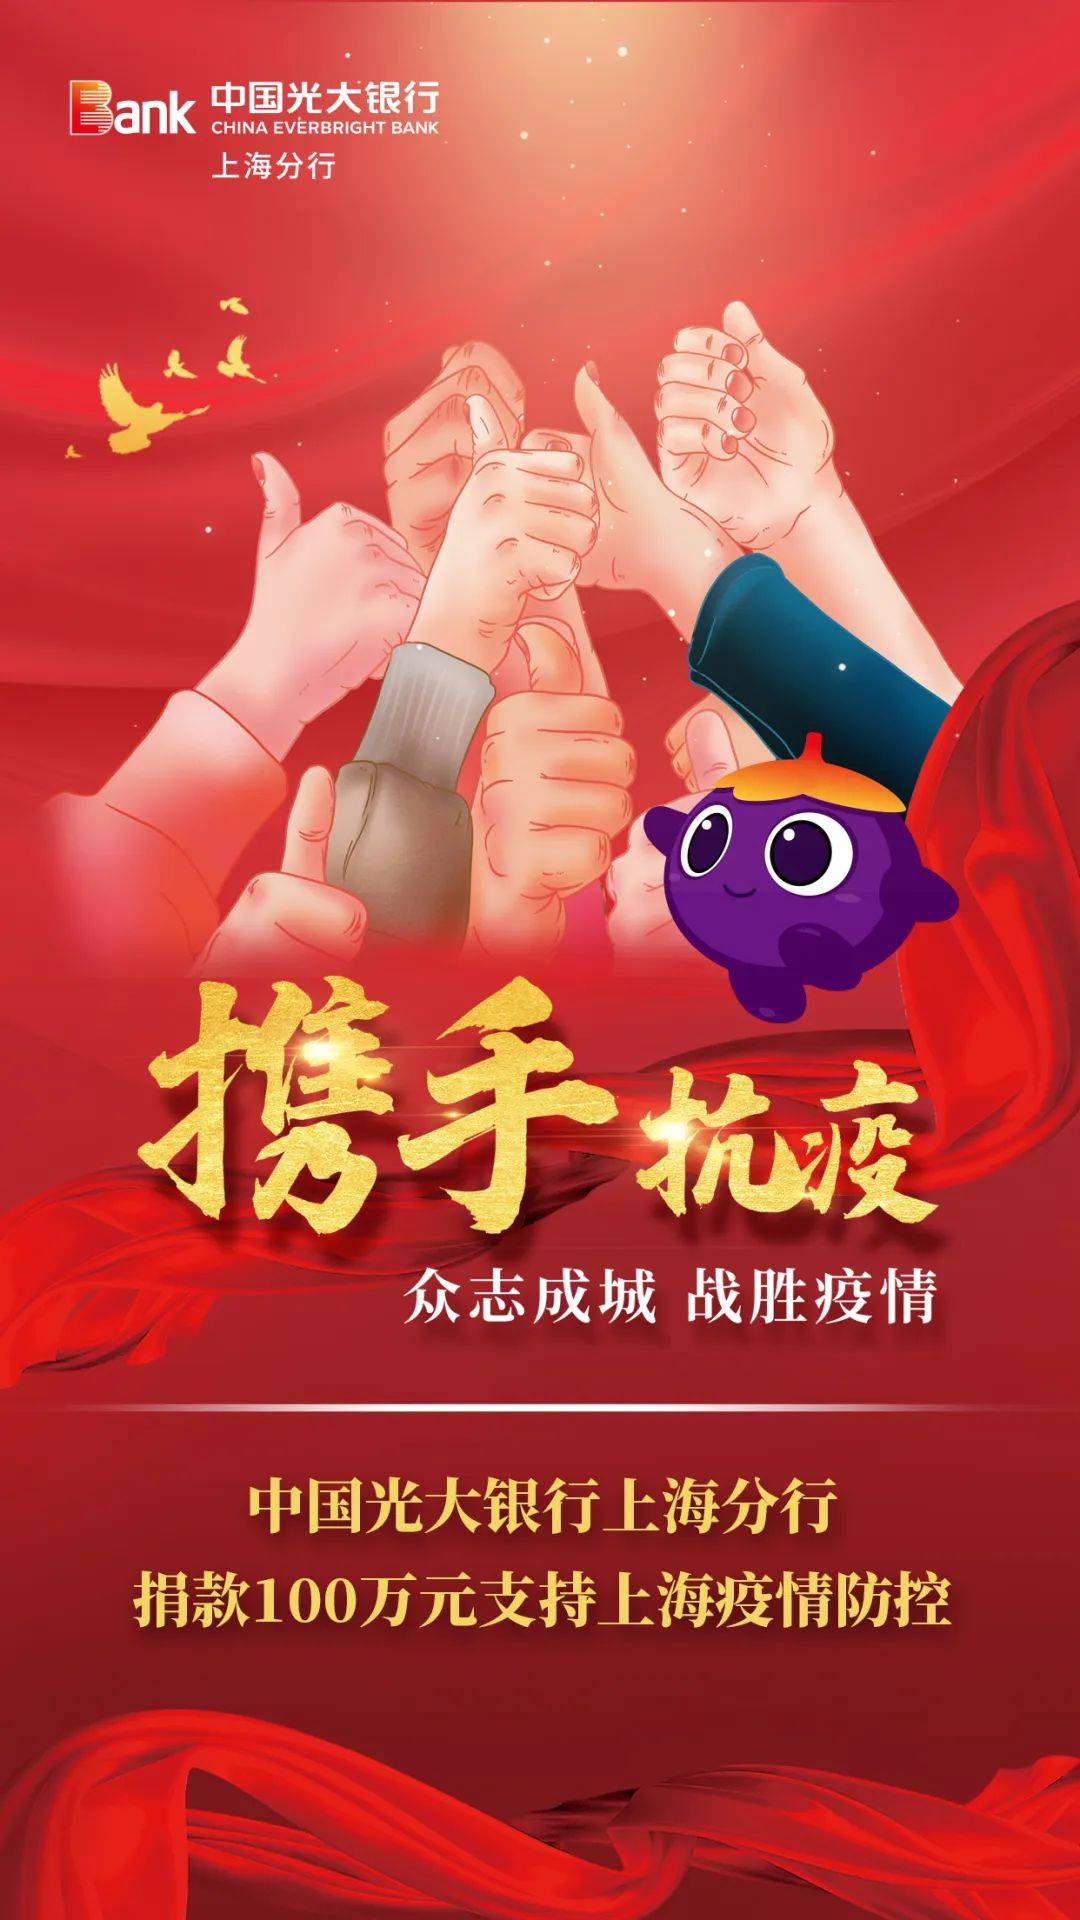 中国光大银行上海分行捐款100万元，支持上海疫情防控